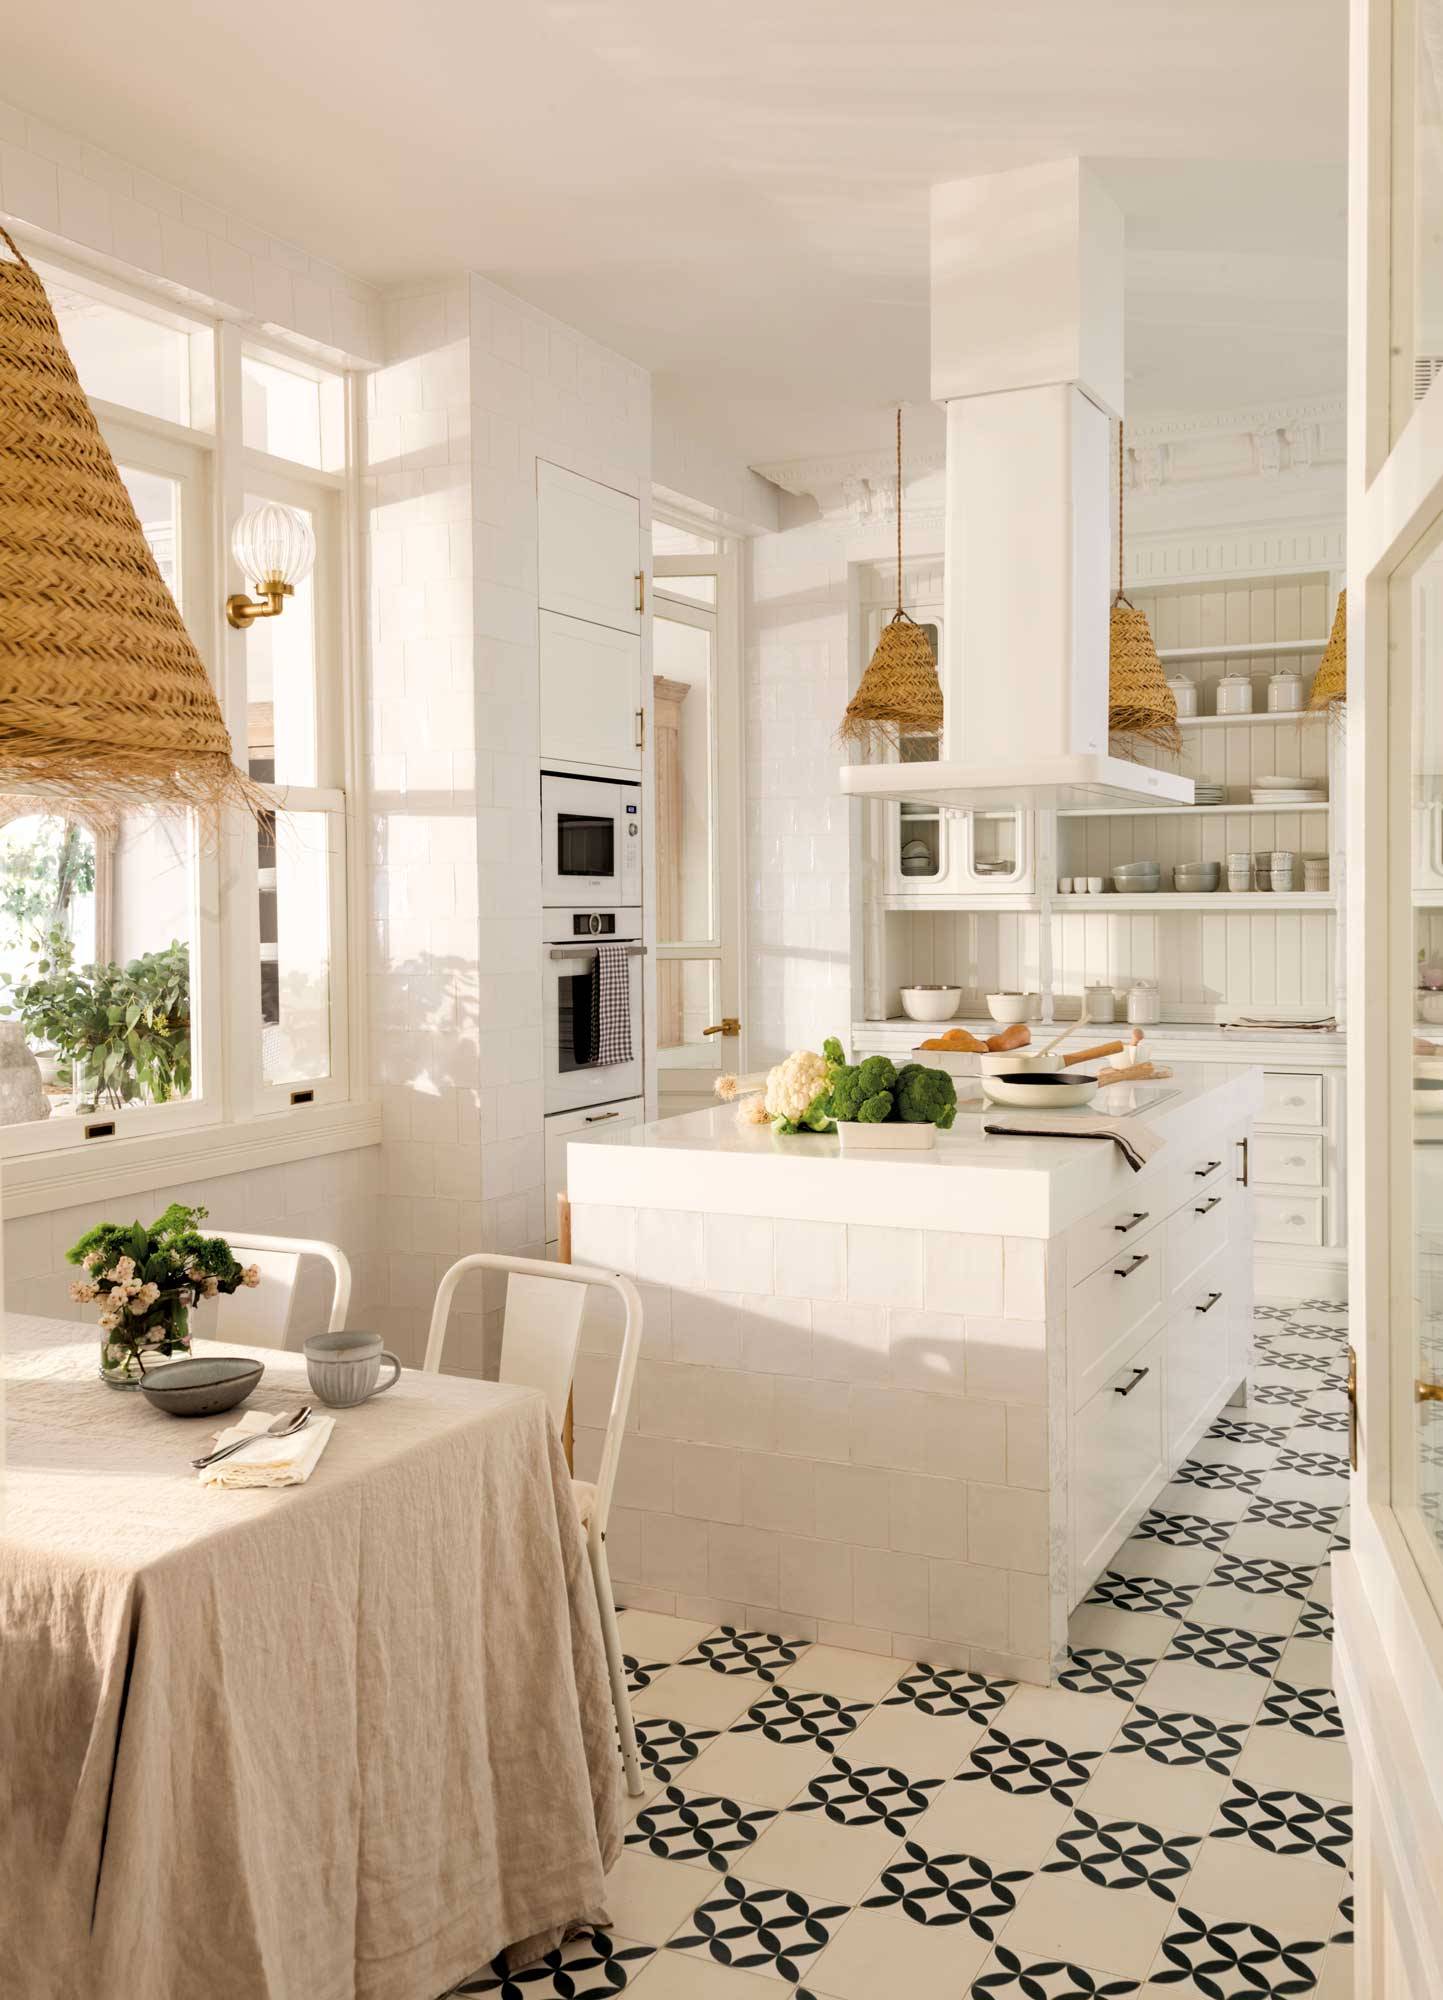 Cocina blanca con isla, azulejos y lámparas de fibras.